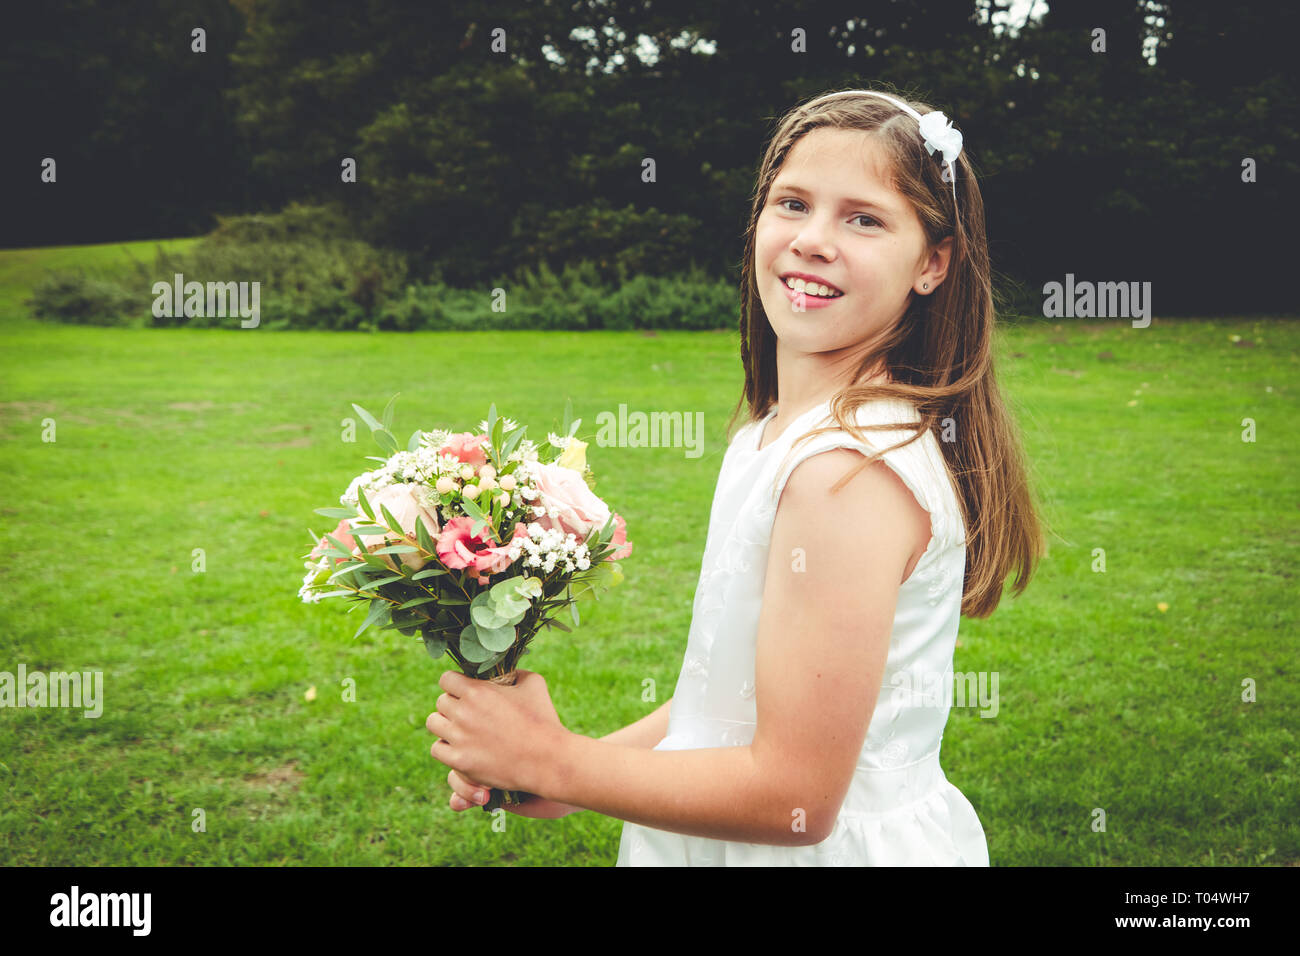 Süße junge Mädchen Tween oder jugendlich Brautjungfer in einem weißen Kleid mit rustikalen posy Blumenstrauß in einem Park Stockfoto